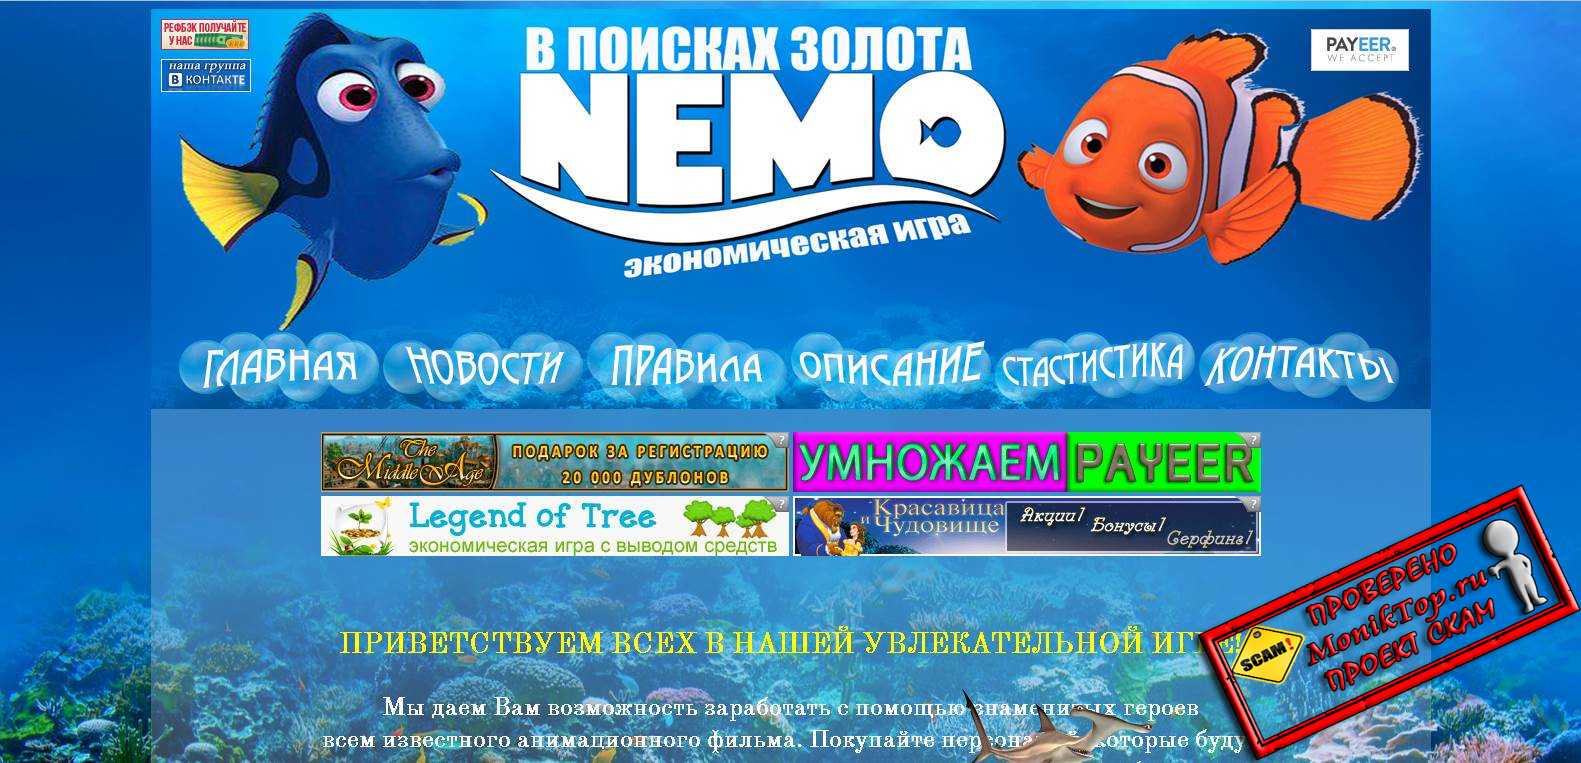  Money Nemo